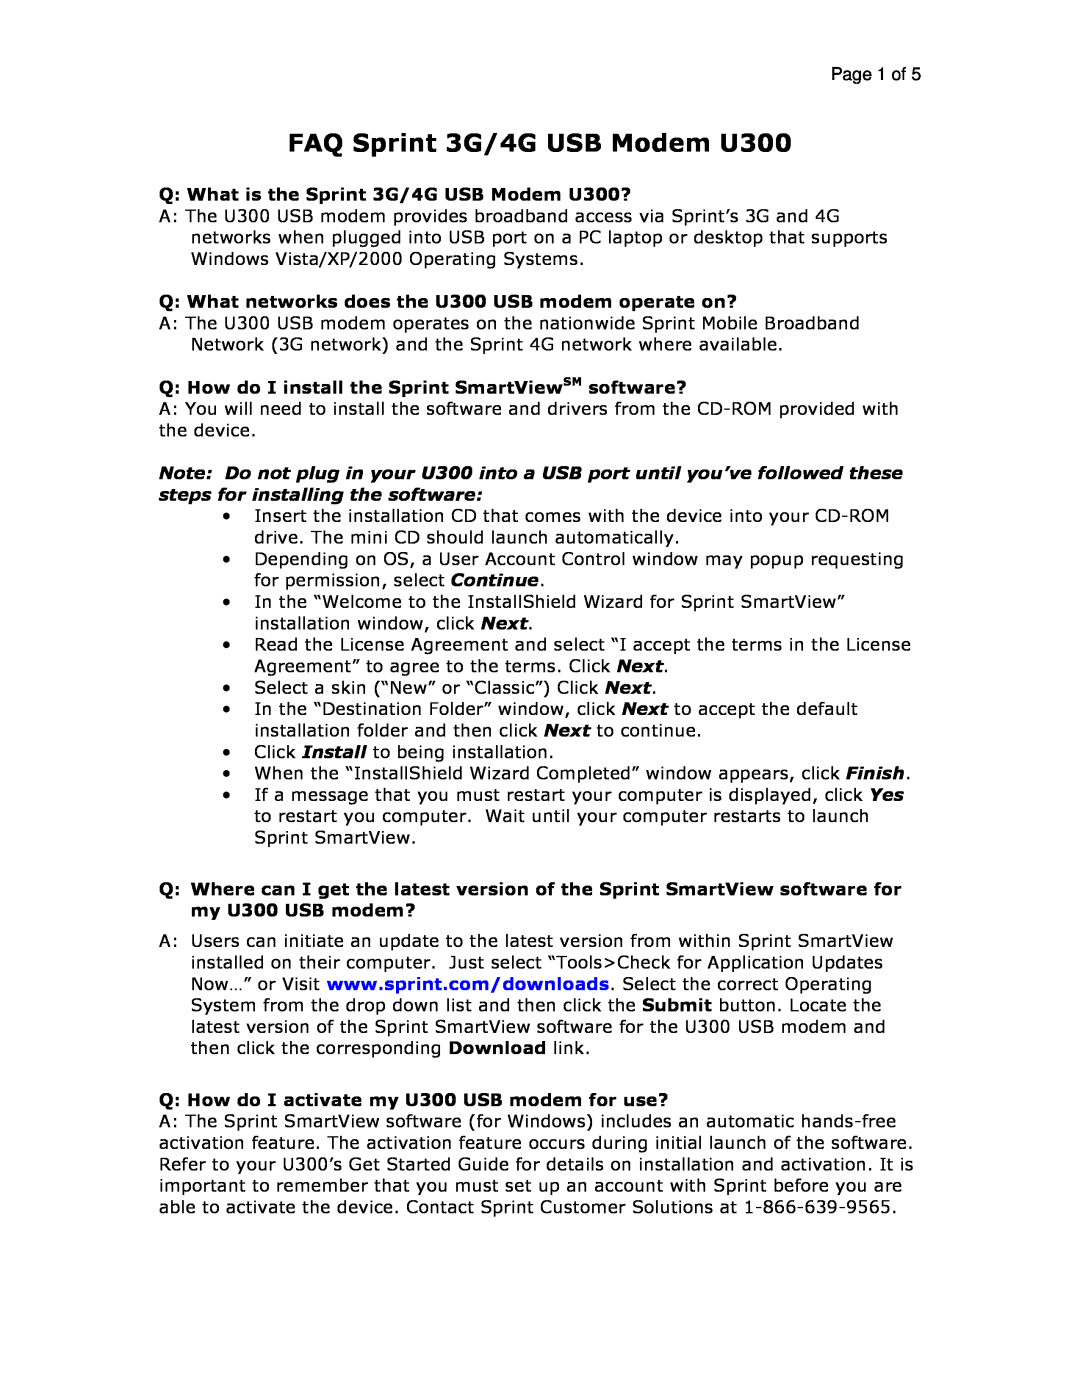 Sprint Nextel manual Page 1 of, FAQ Sprint 3G/4G USB Modem U300 